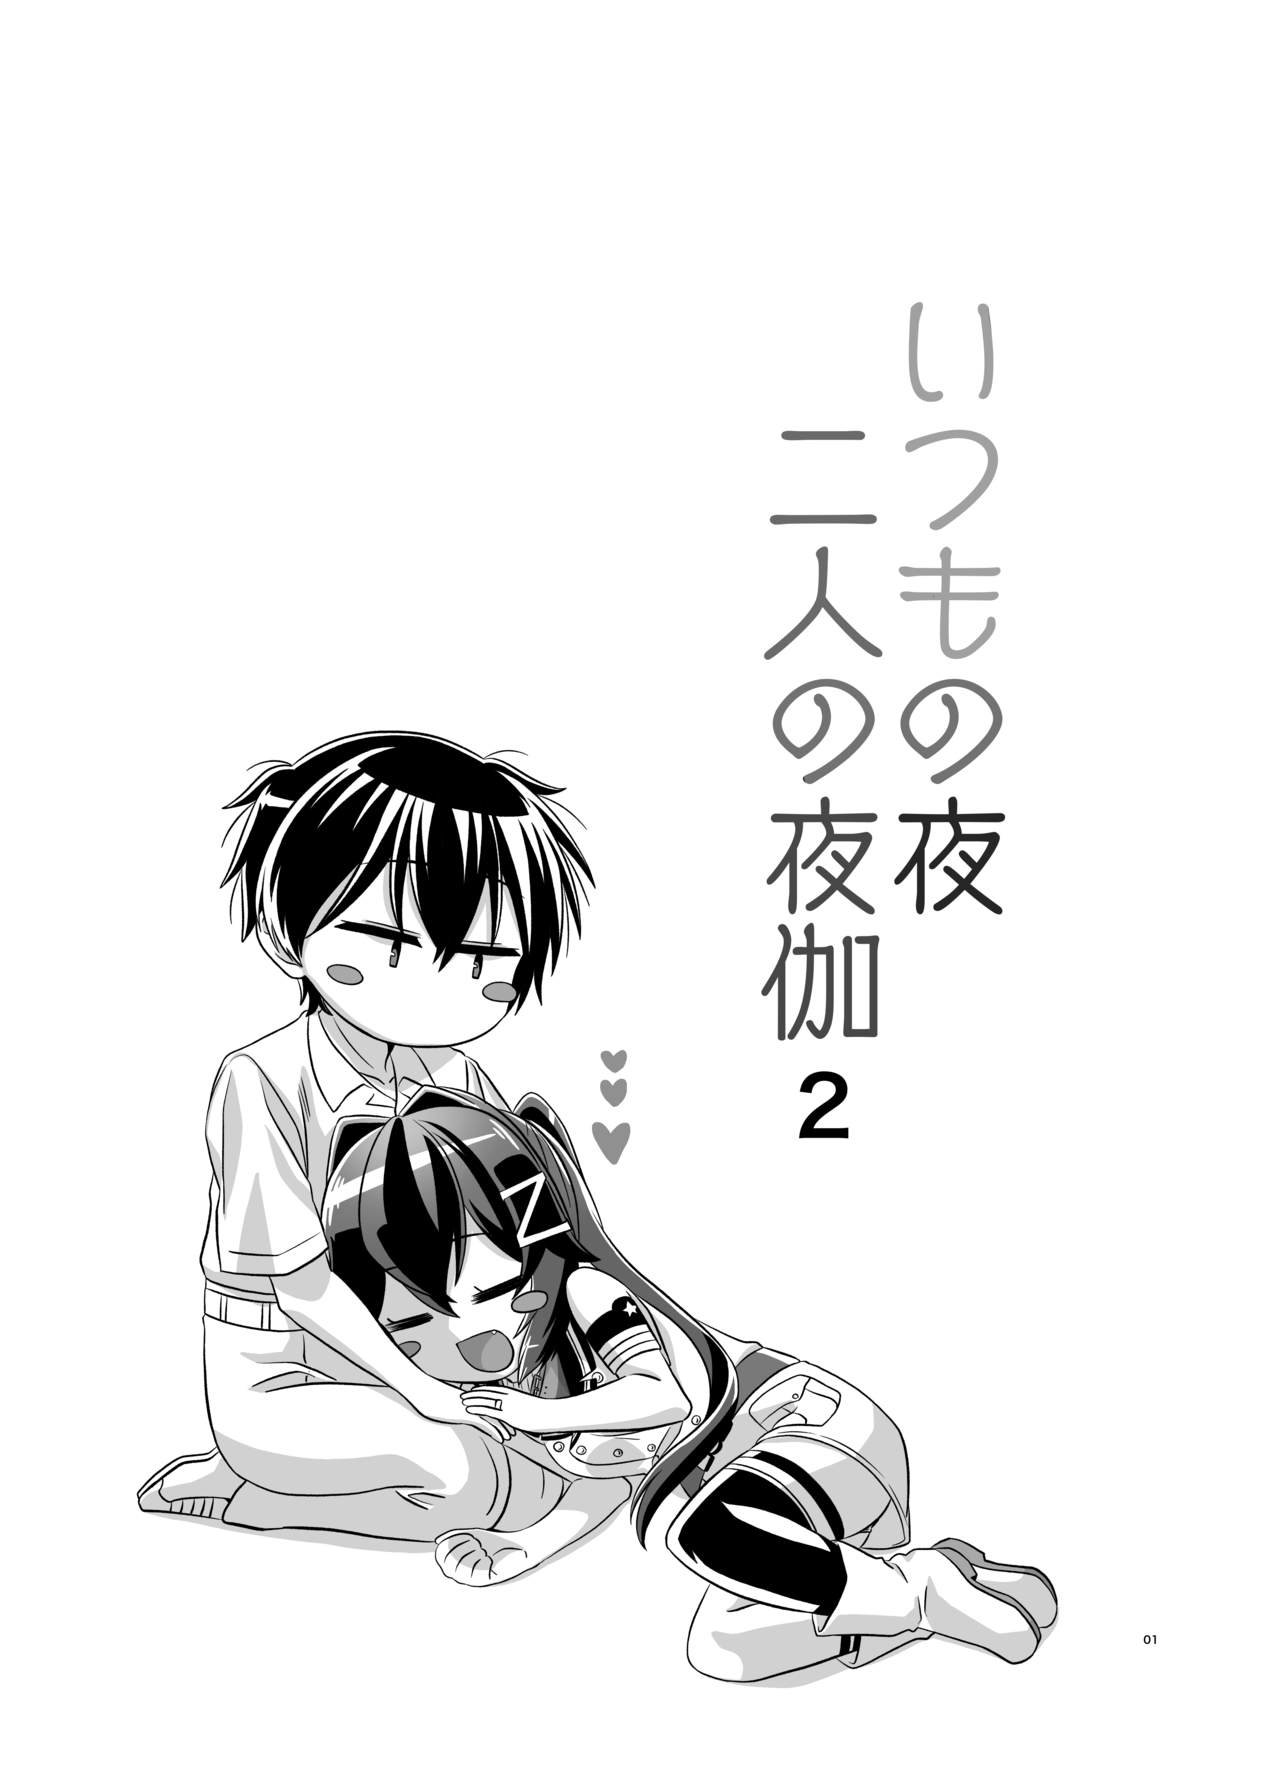 [Torutī-ya] Itsumo no yoru futari no yotogi⑵ (Warship Girls R) page 2 full